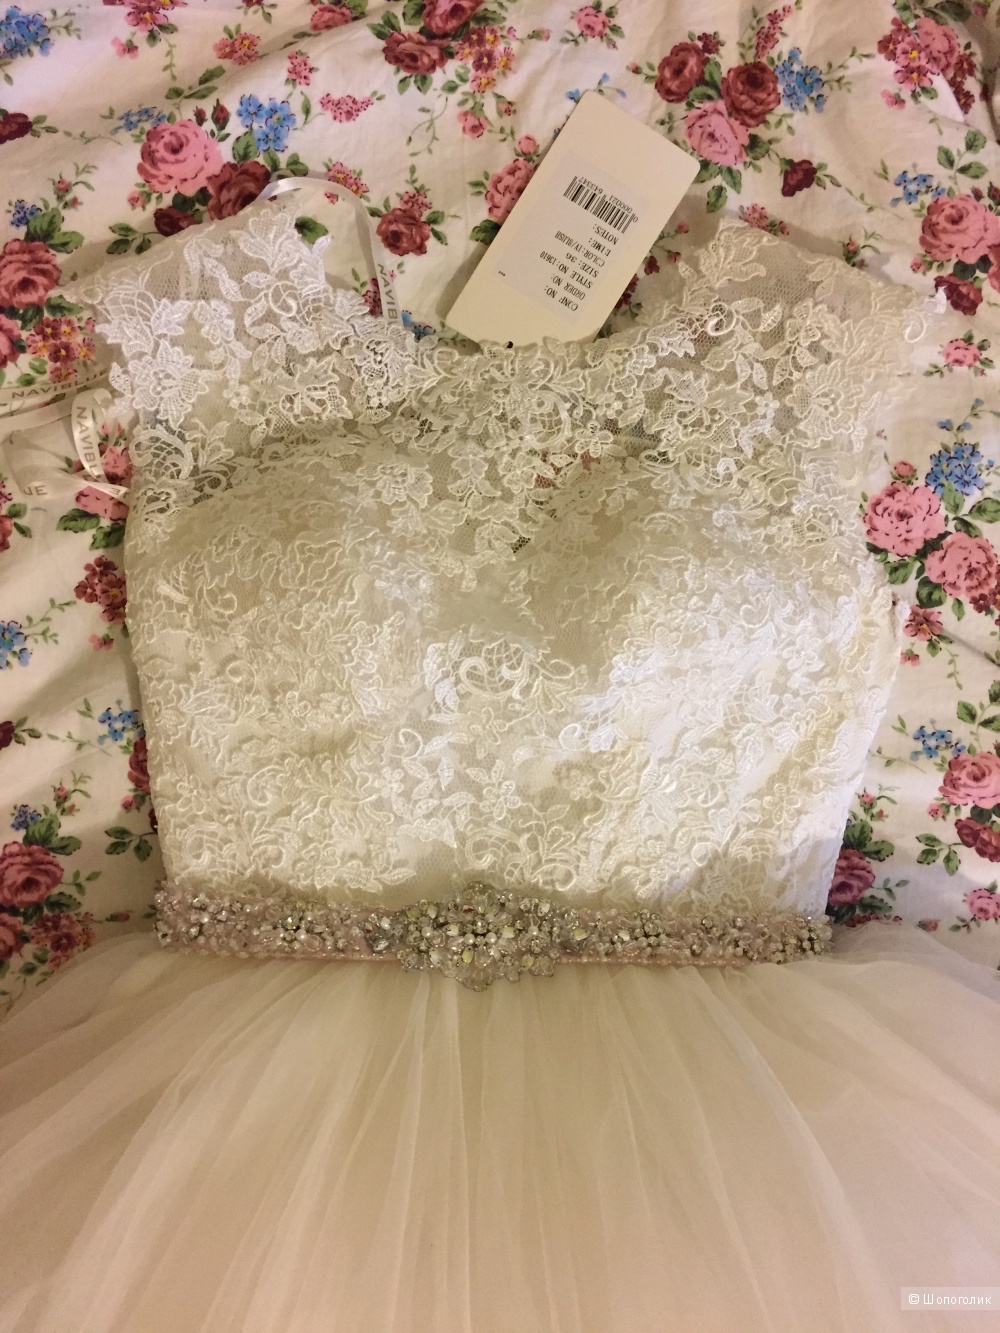 НОВОЕ свадебное платье NAVIBLUE ROMANCE #13610